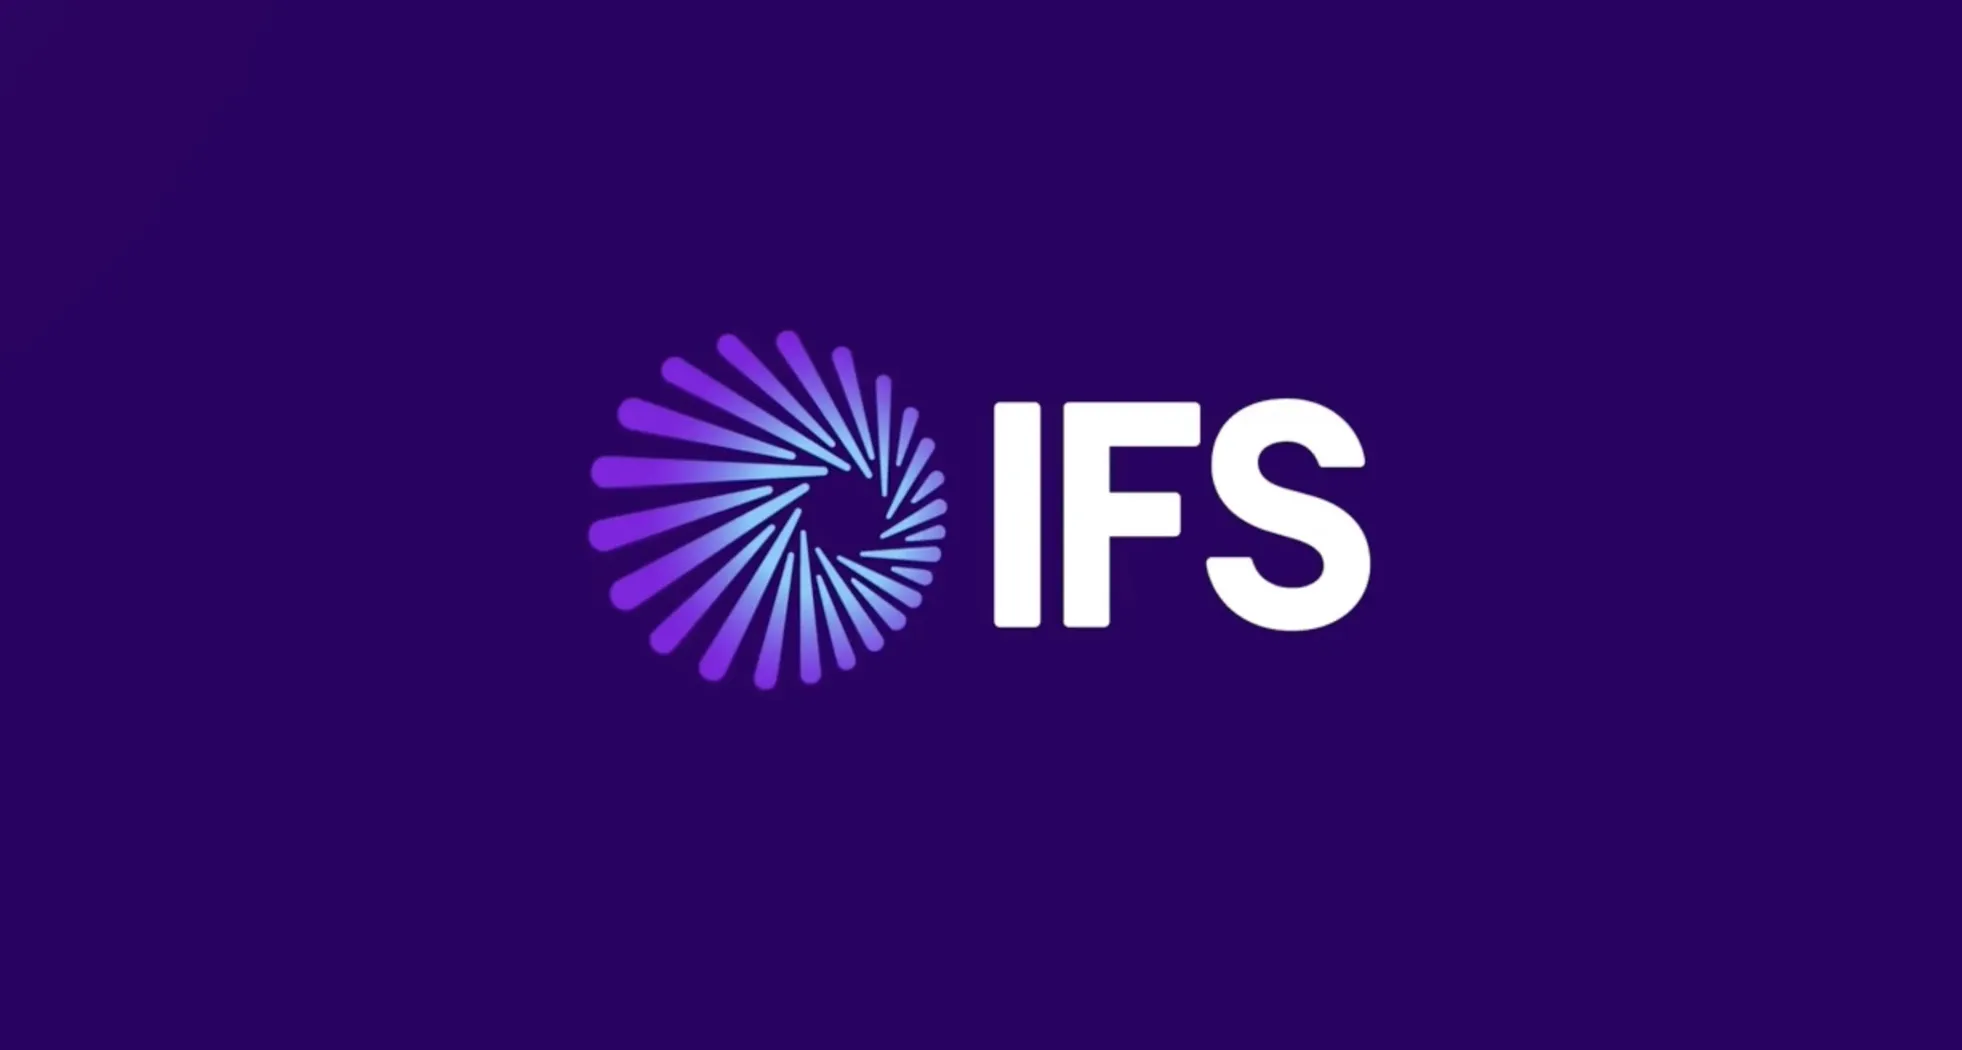 IFS come software Enterprise Cloud